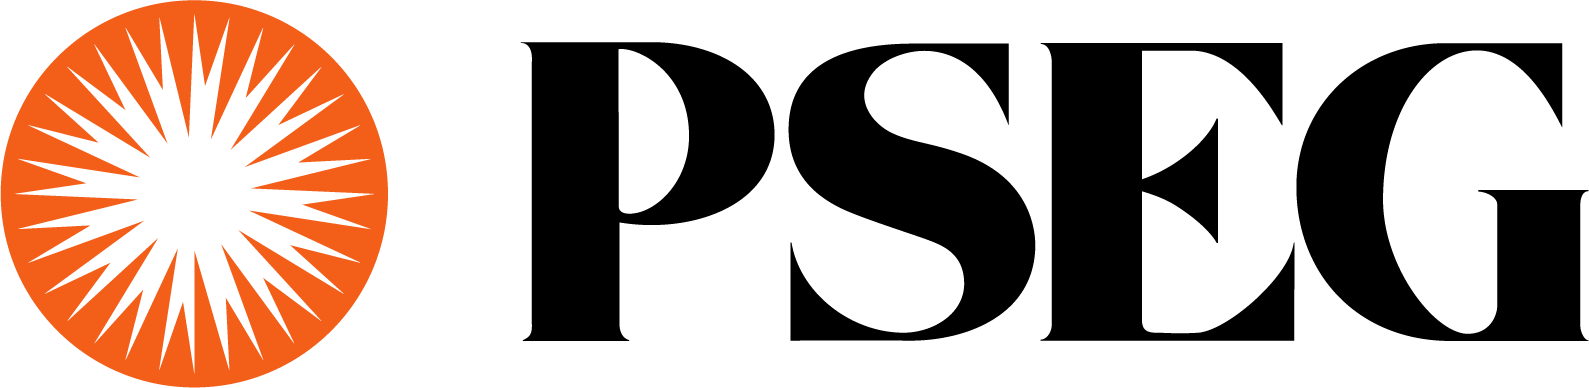 PSEG Logo (Public Service Enterprise Group) png